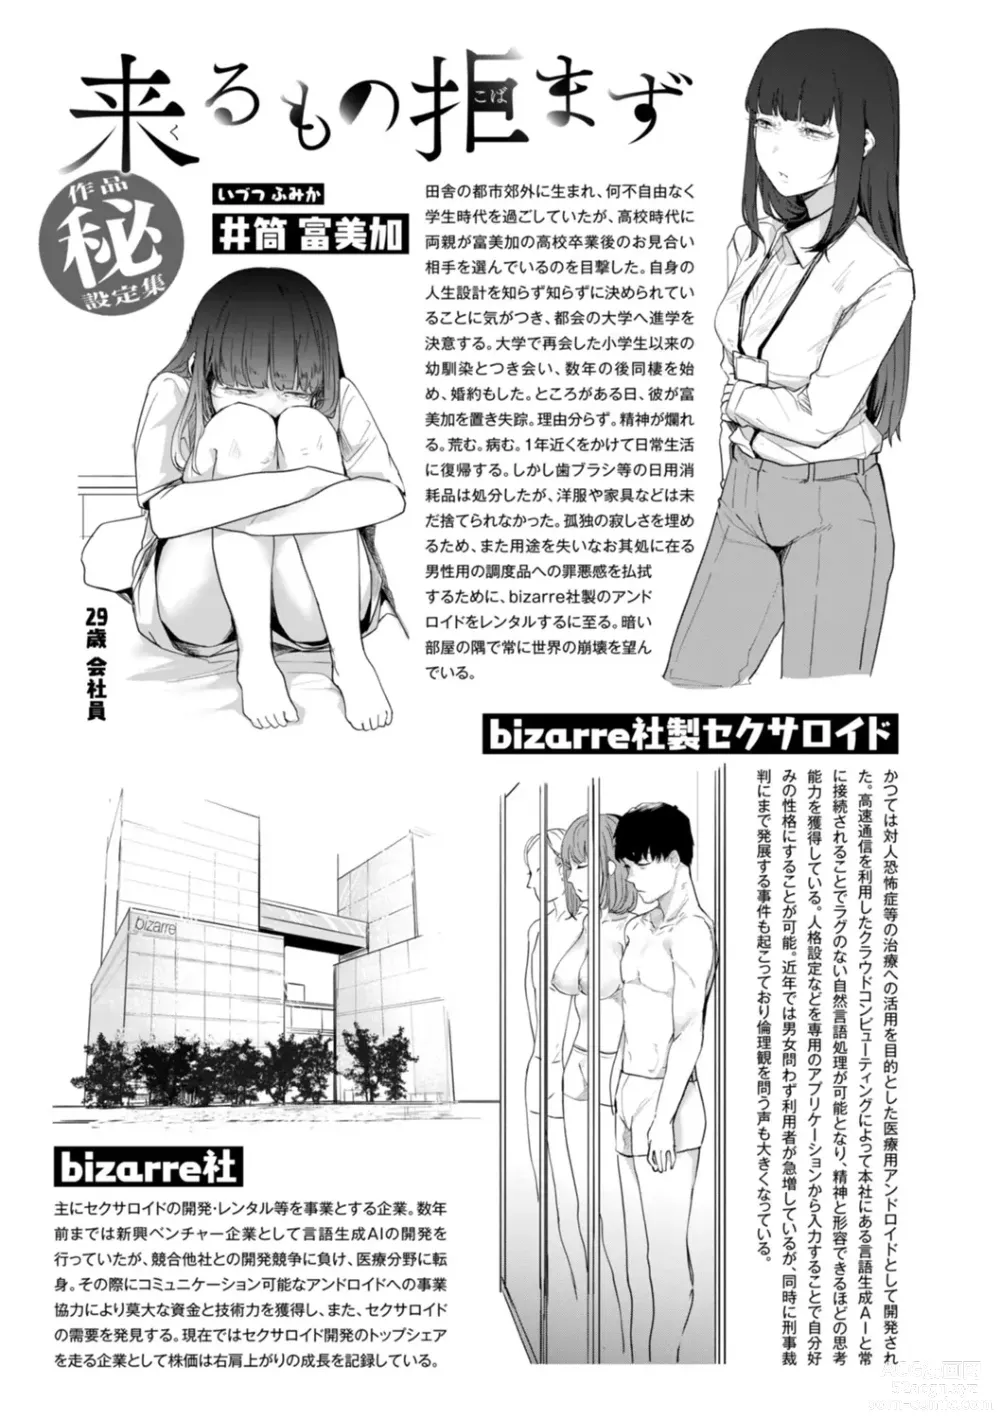 Page 167 of manga Kiteretsu Porno Zenshuu